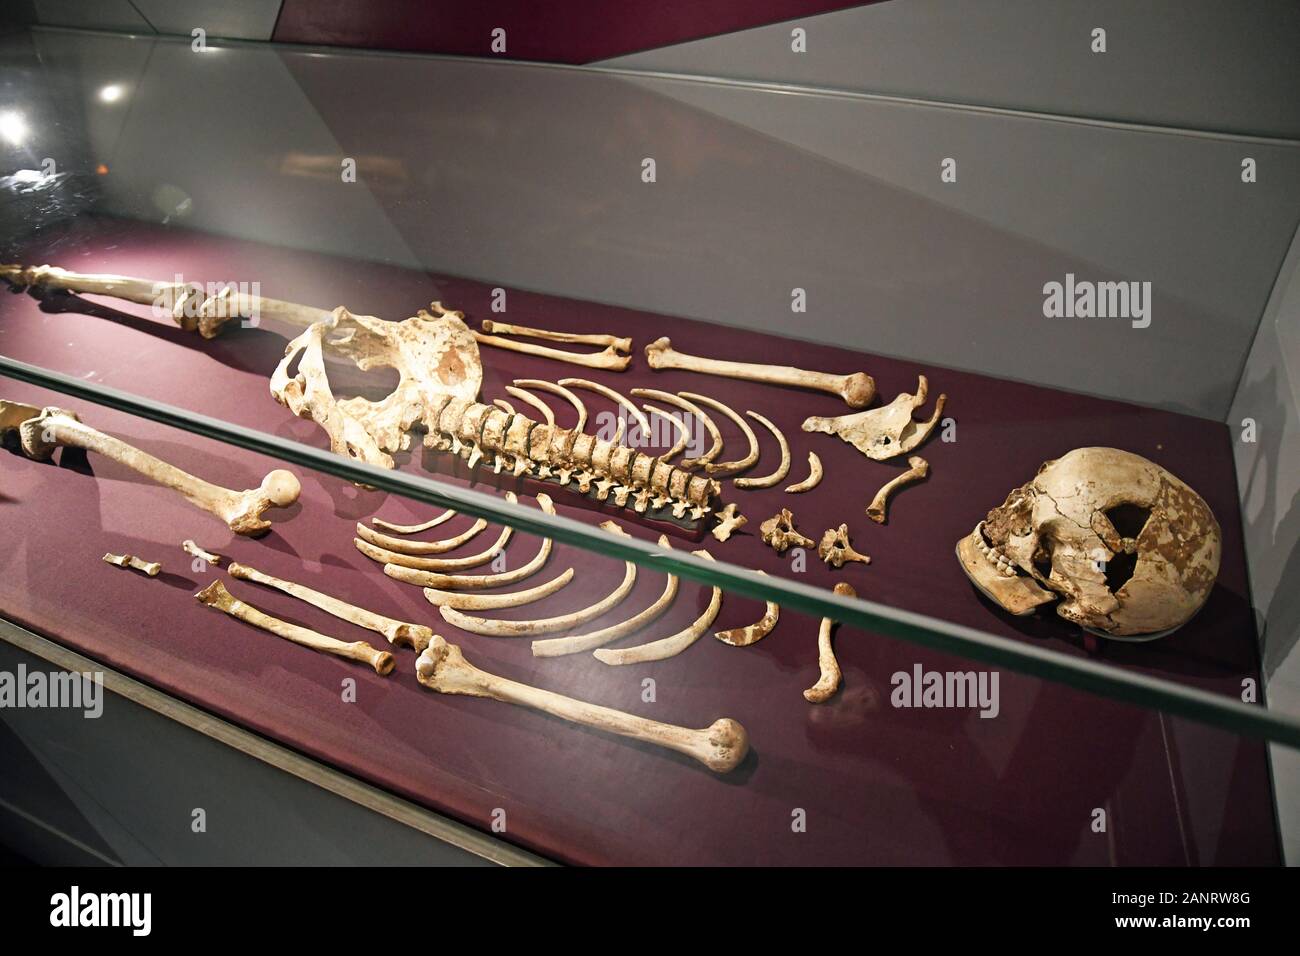 Cheddar Man Skelett in der Urgeschichte Galerie mit Blick auf die menschliche Evolution von Affen zu Menschen, das Natural History Museum, London, England, Großbritannien Stockfoto